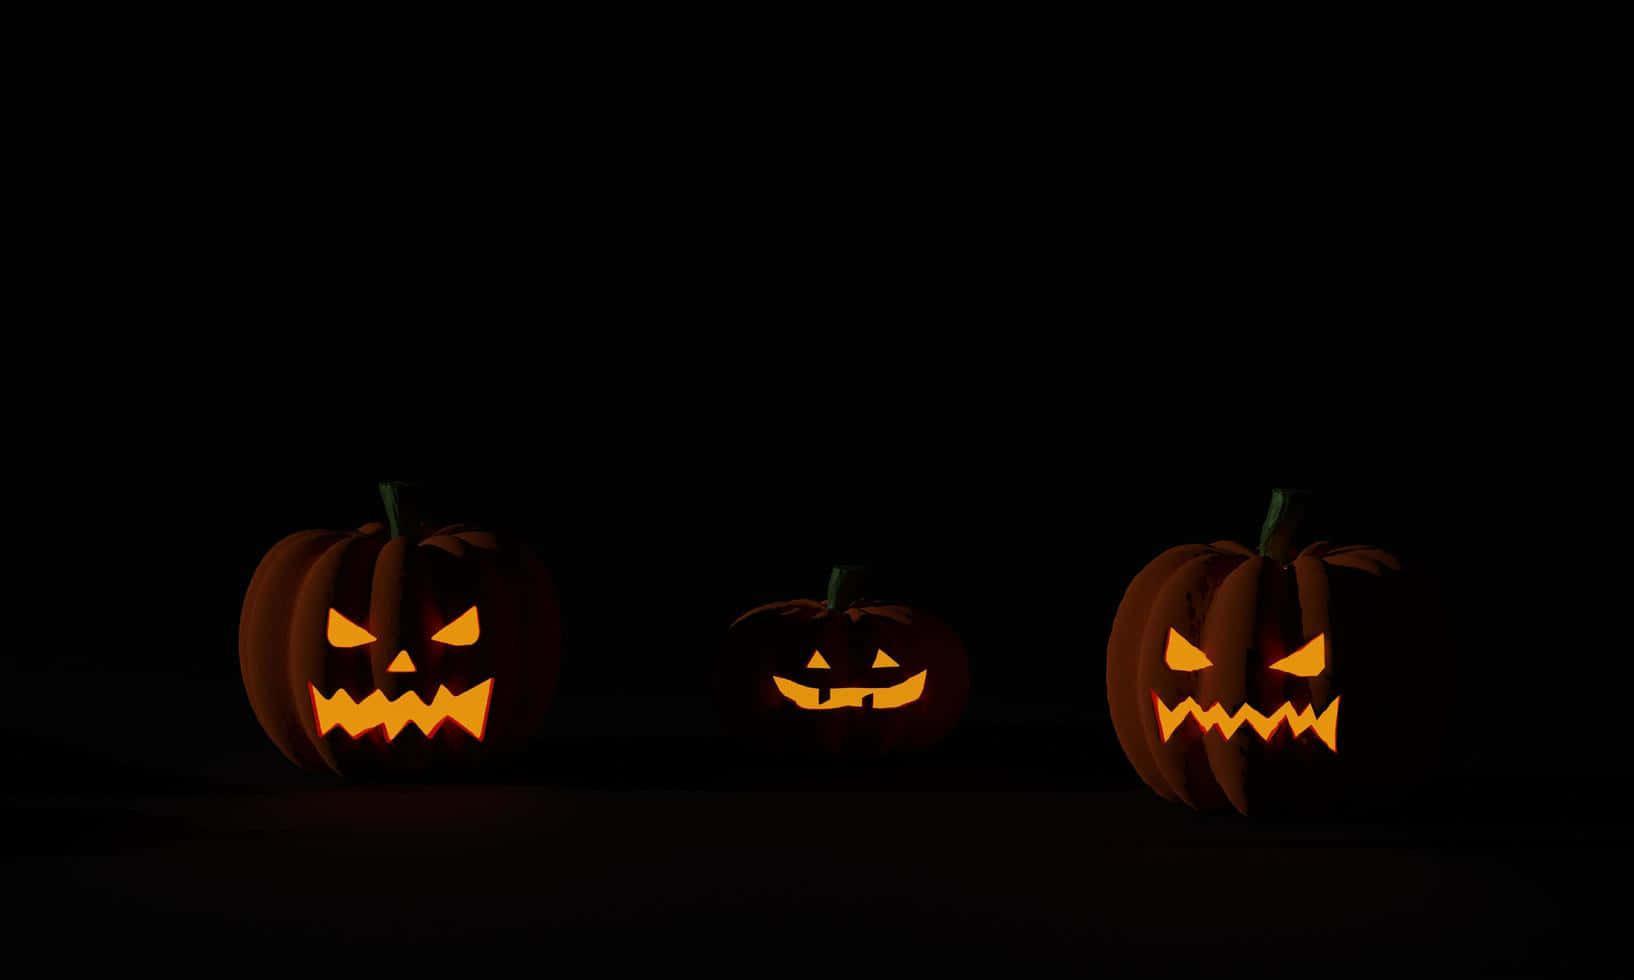 Fondode Pantalla De Tres Calabazas De Halloween En Tonos Oscuros.